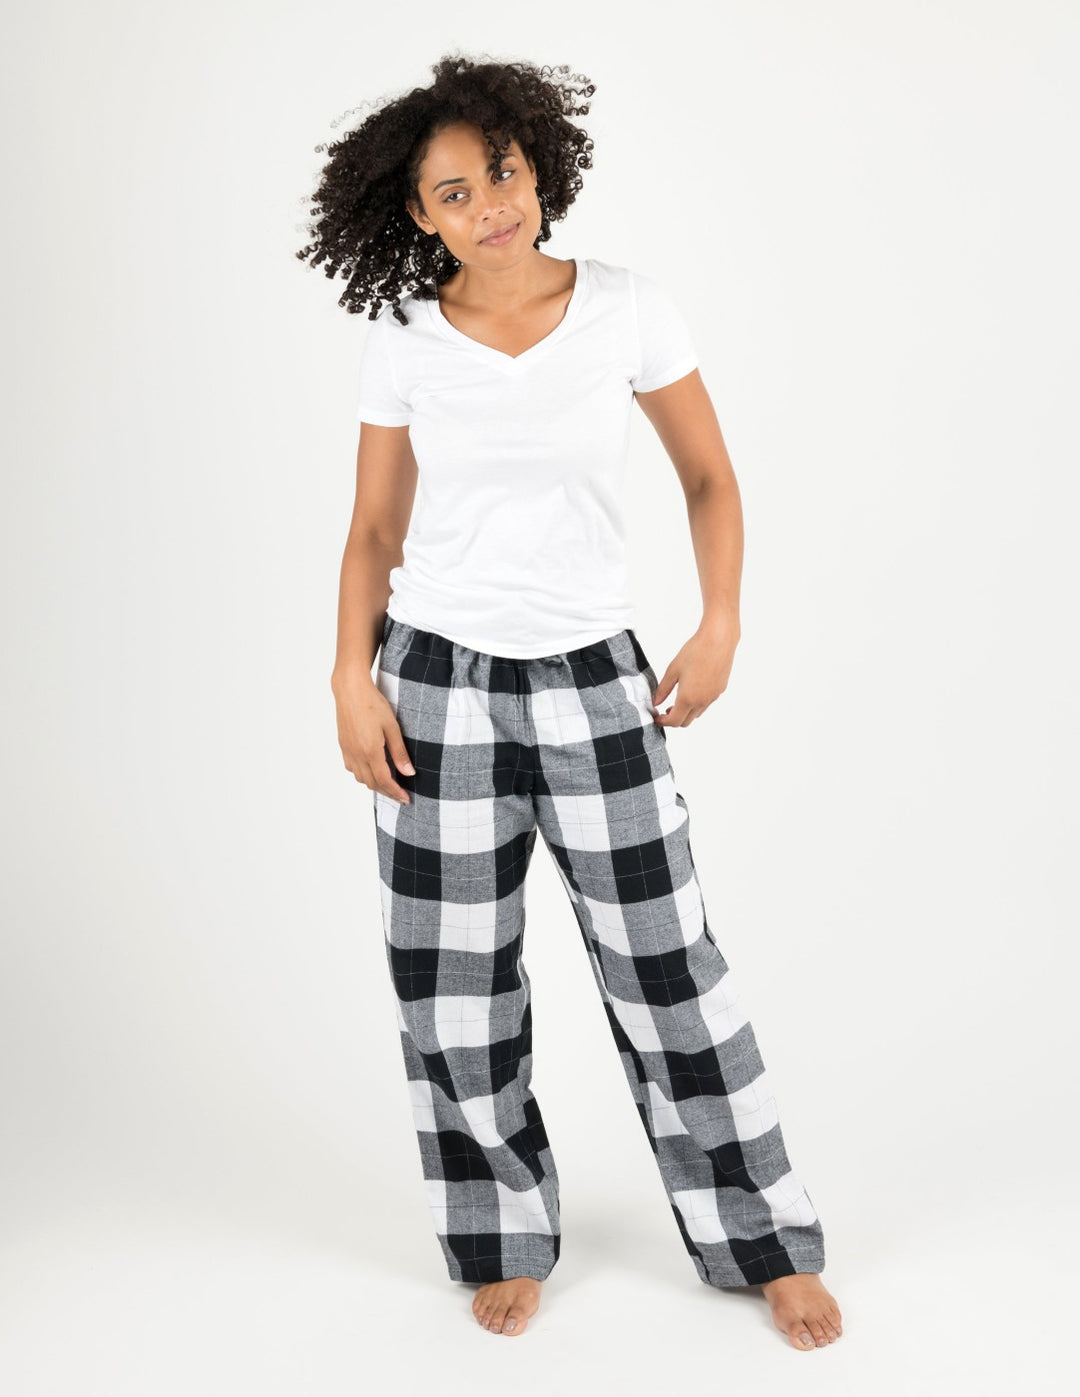 Women's Black & White Plaid Flannel Pants